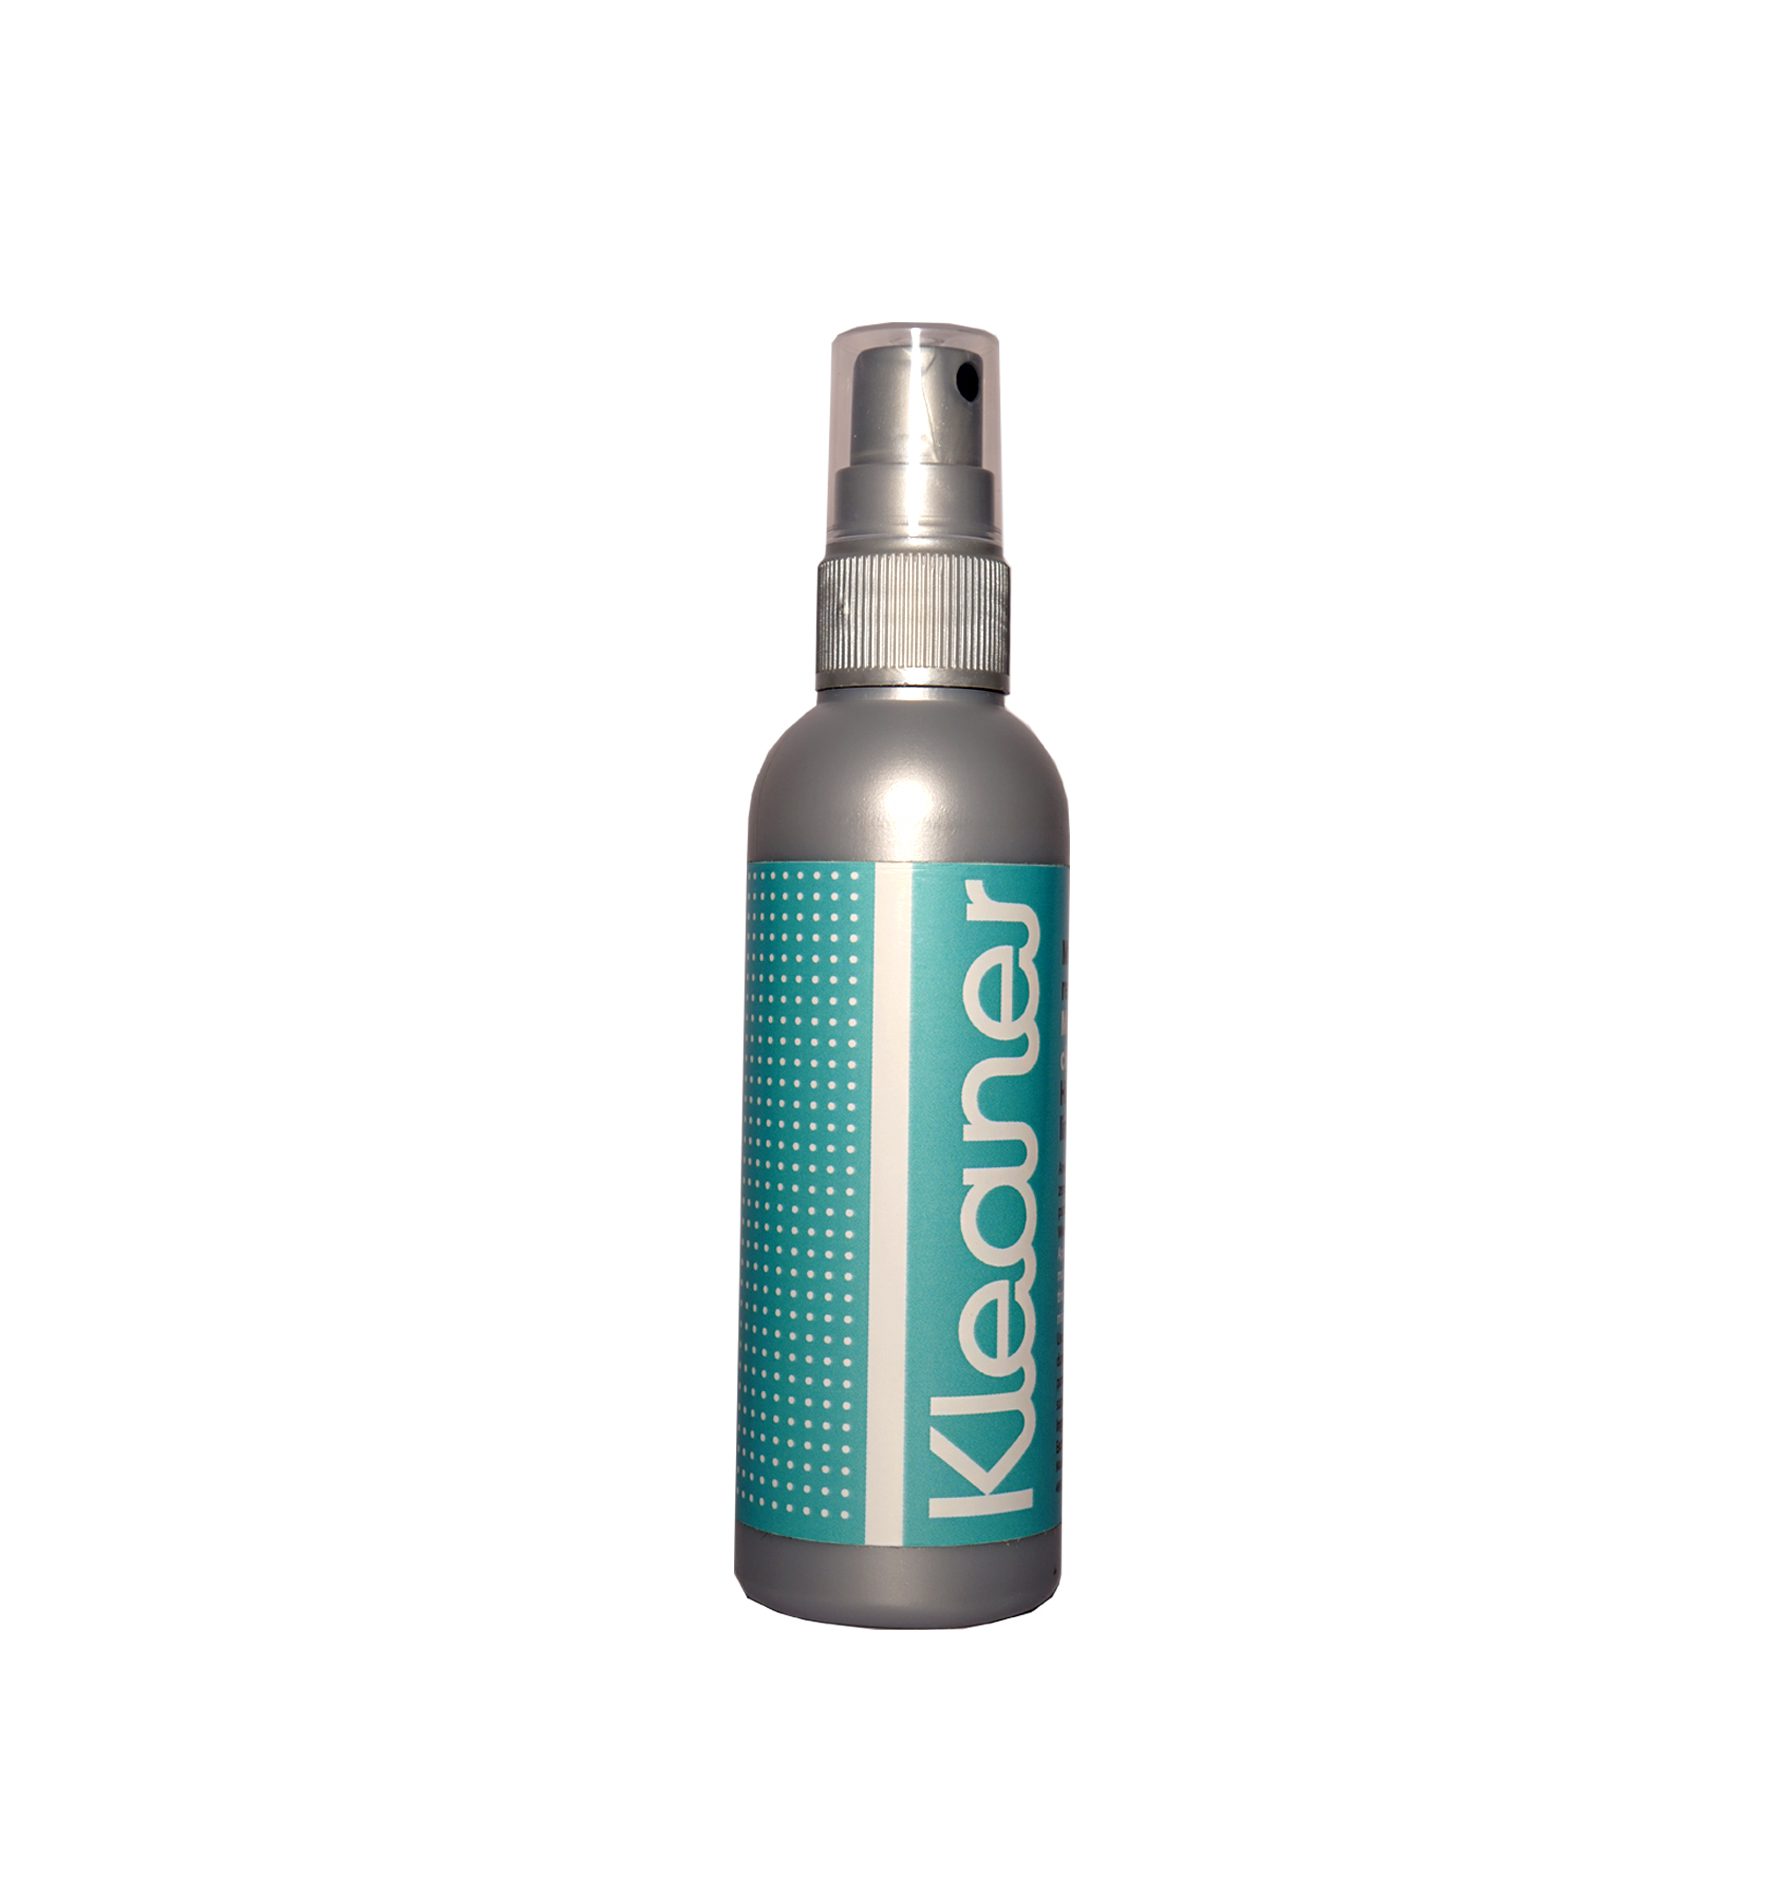 Kleaner Spray - skuteczny detox skóry i śliny. Spray detoksykacja.